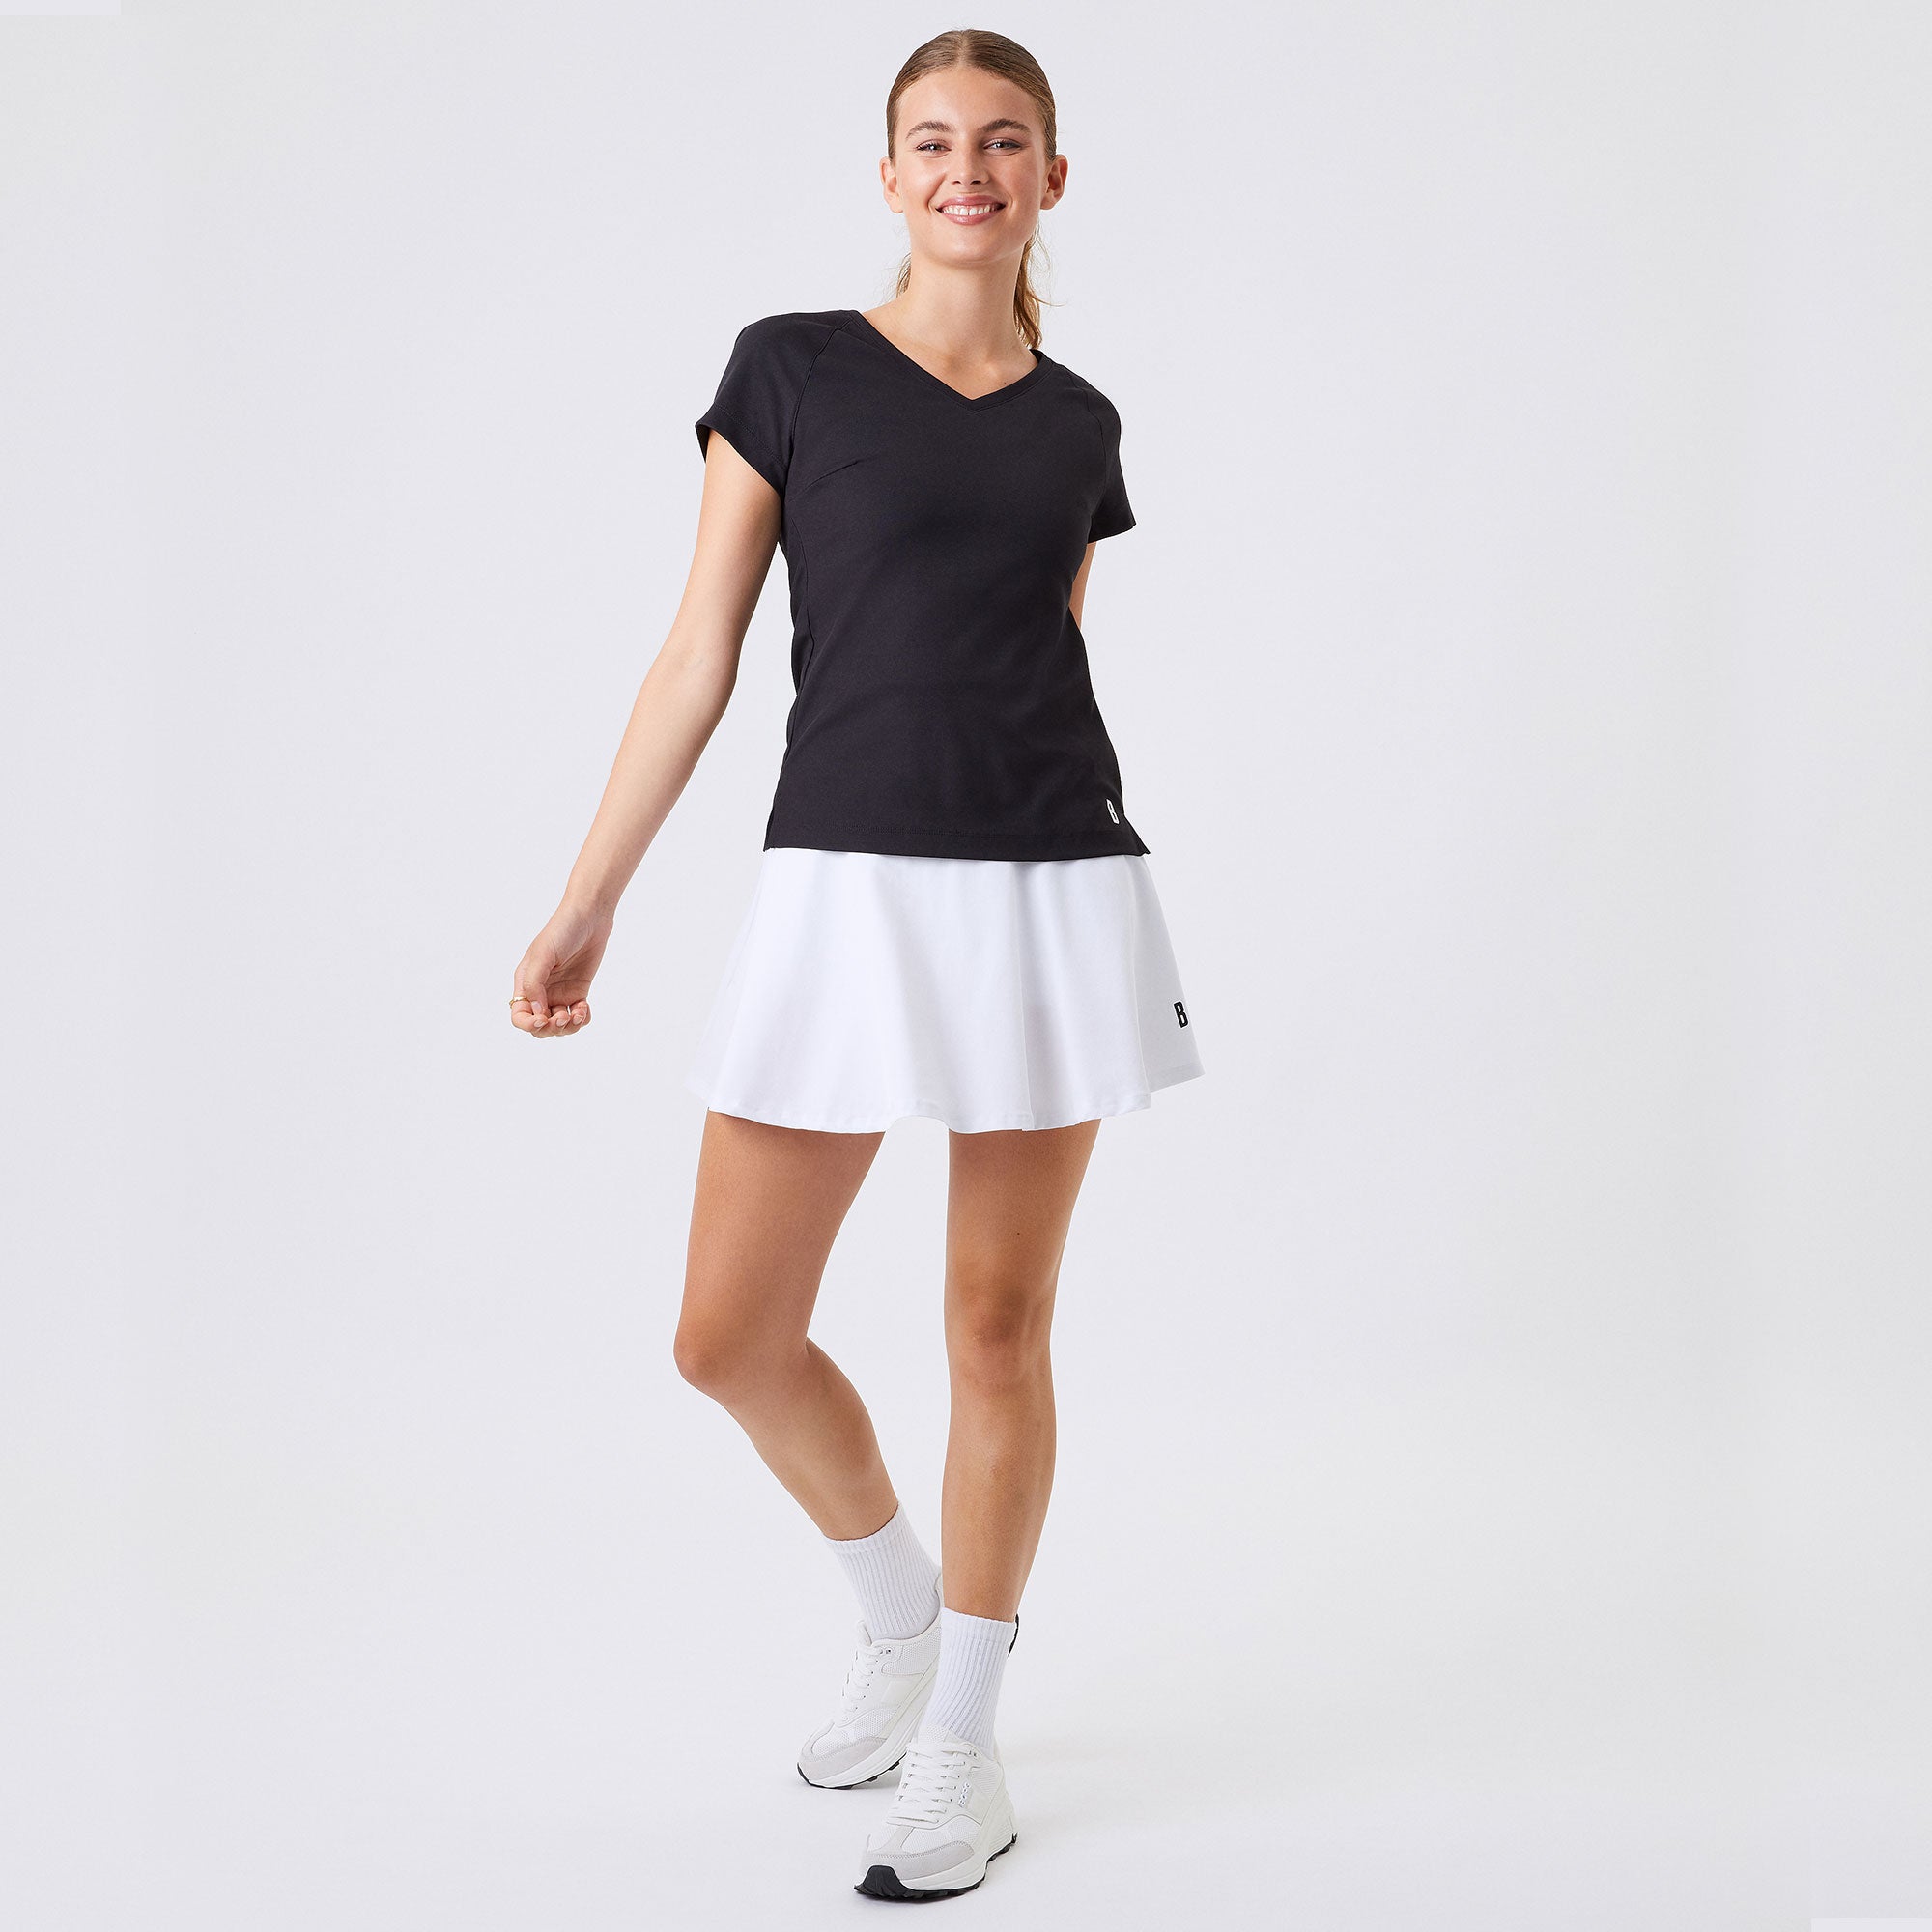 Björn Borg Ace Women's Tennis Shirt Black (4)